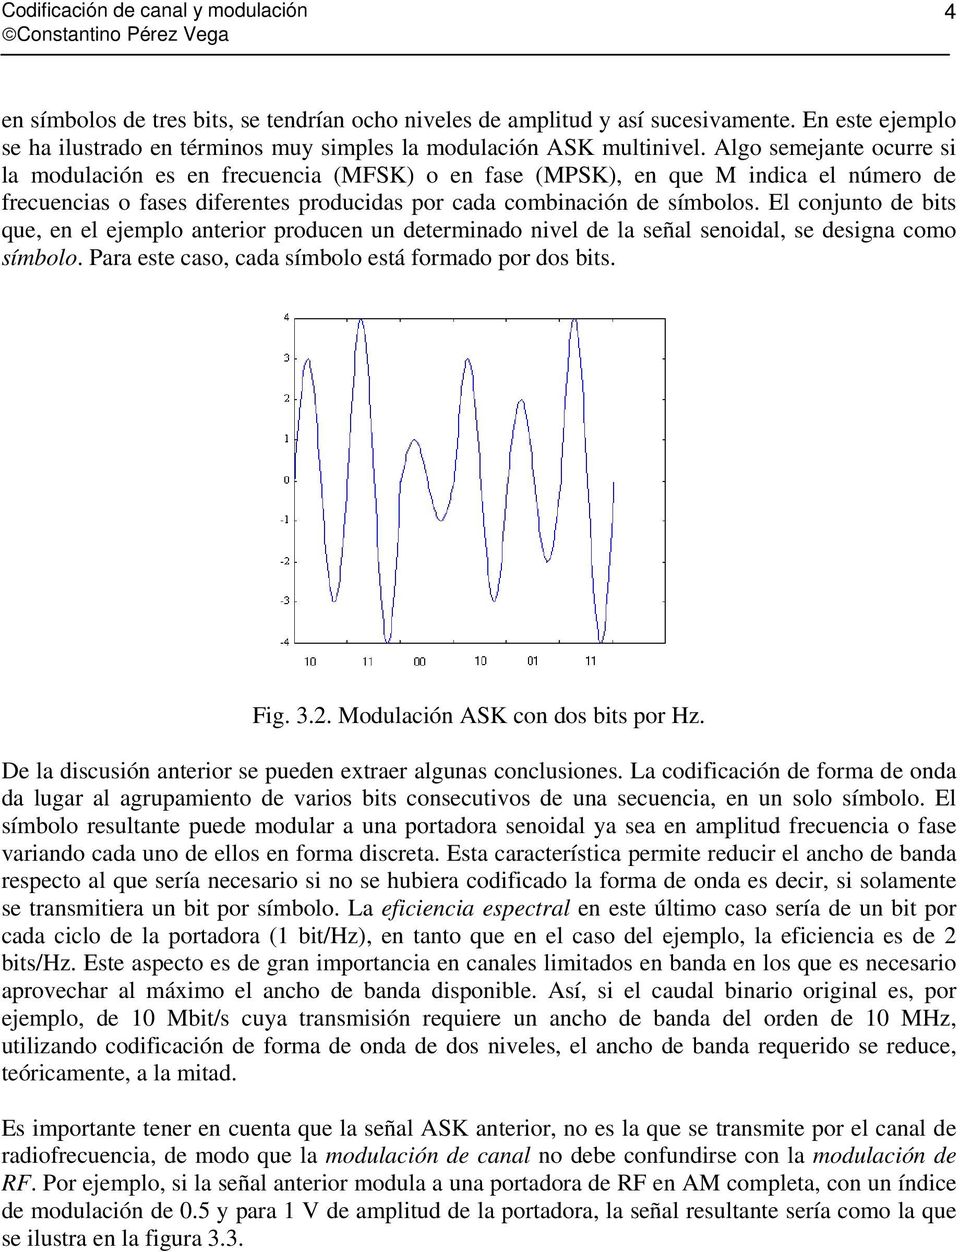 Algo semejante ocurre si la modulación es en frecuencia (MFSK) o en fase (MPSK), en que M indica el número de frecuencias o fases diferentes producidas por cada combinación de símbolos.